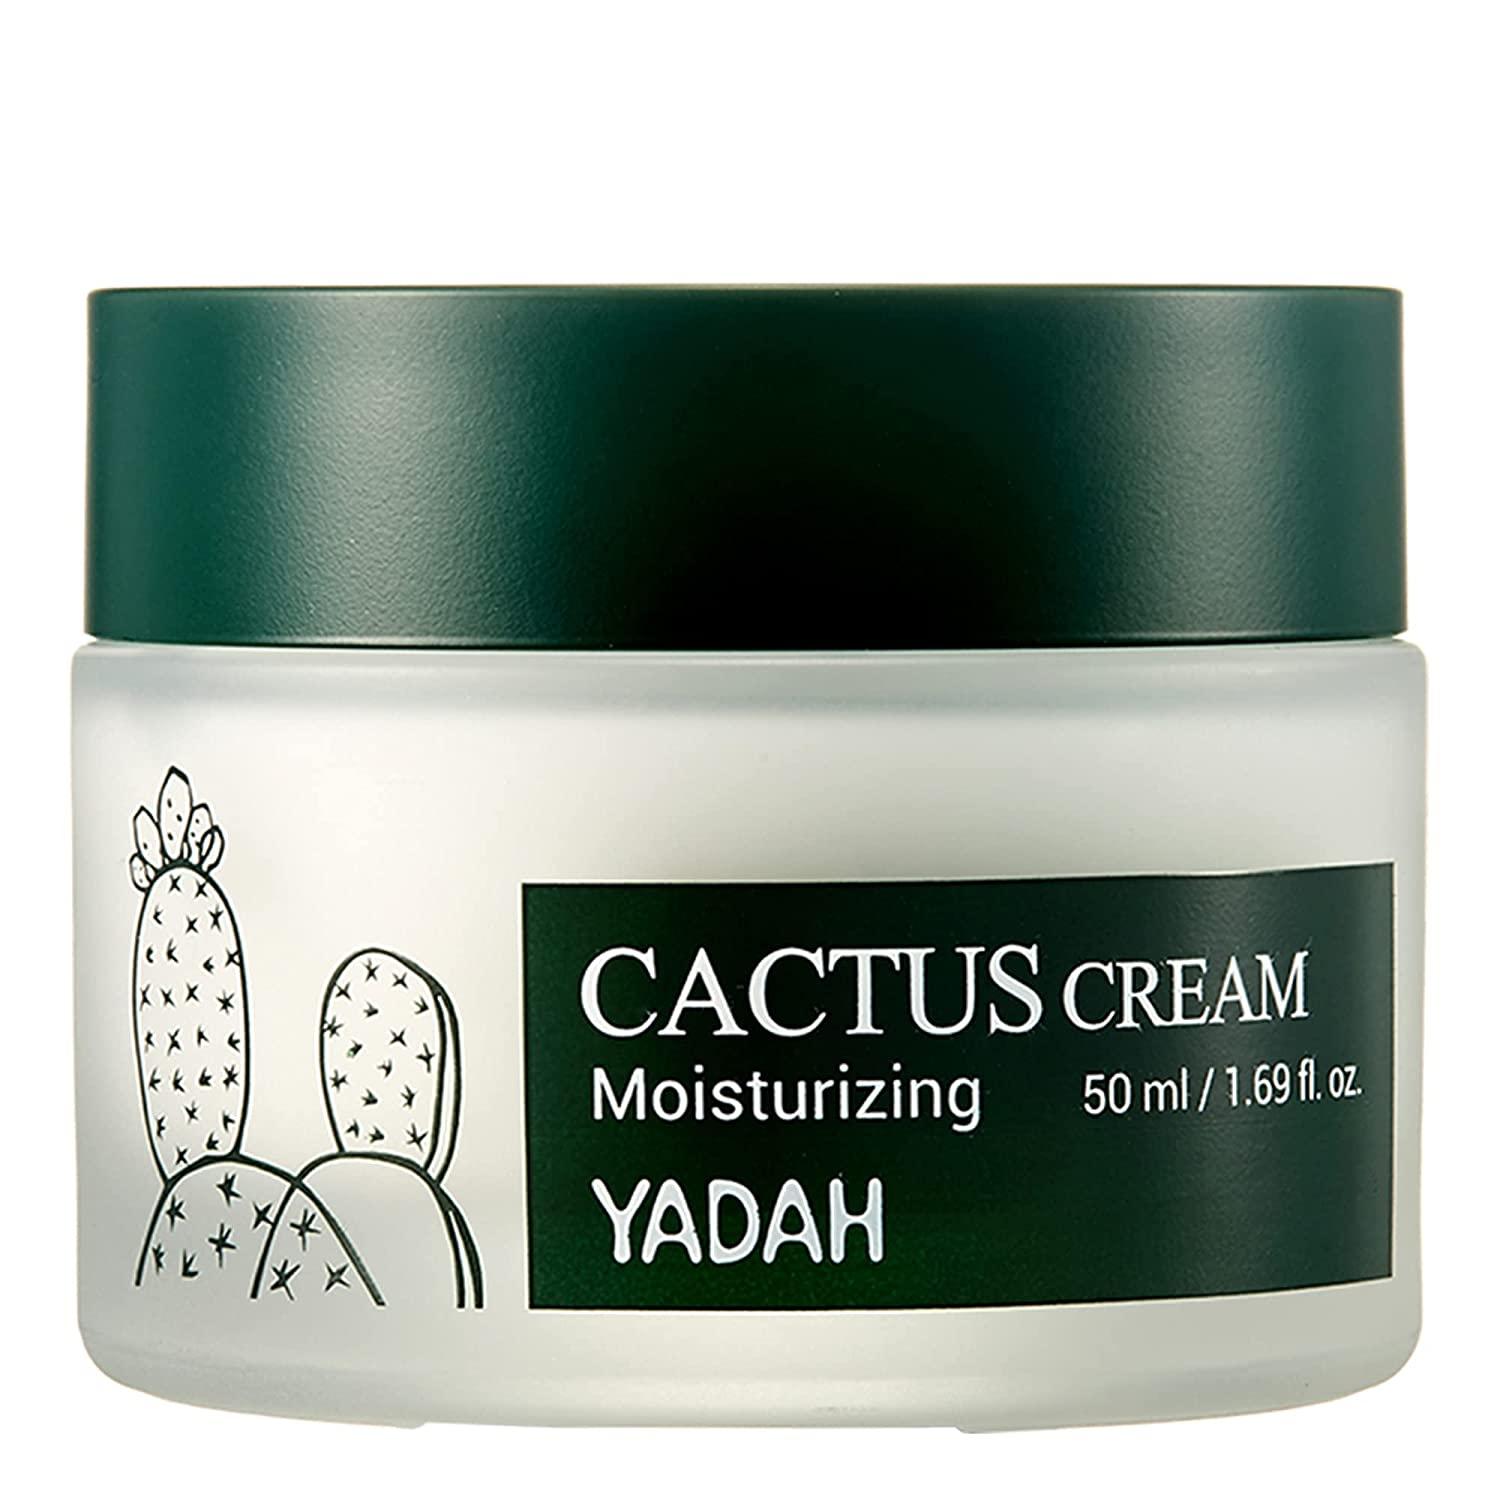 Cactus Moisturizing Cream